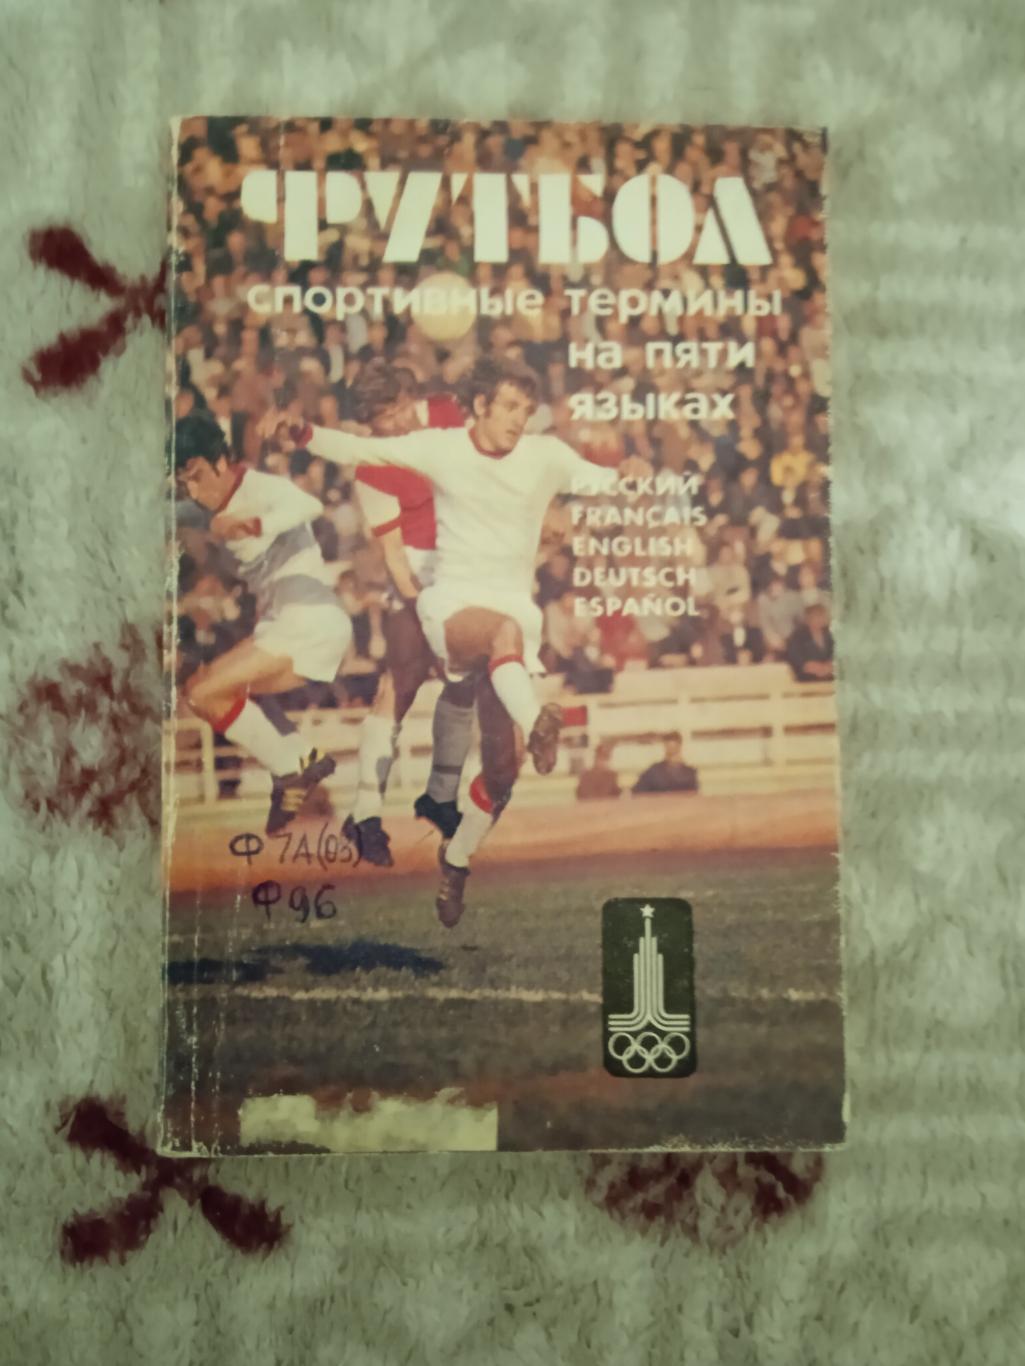 Ю.Жуков и др..Футбол.Спортивные термины на пяти языках.Москва Русский язык 1979.